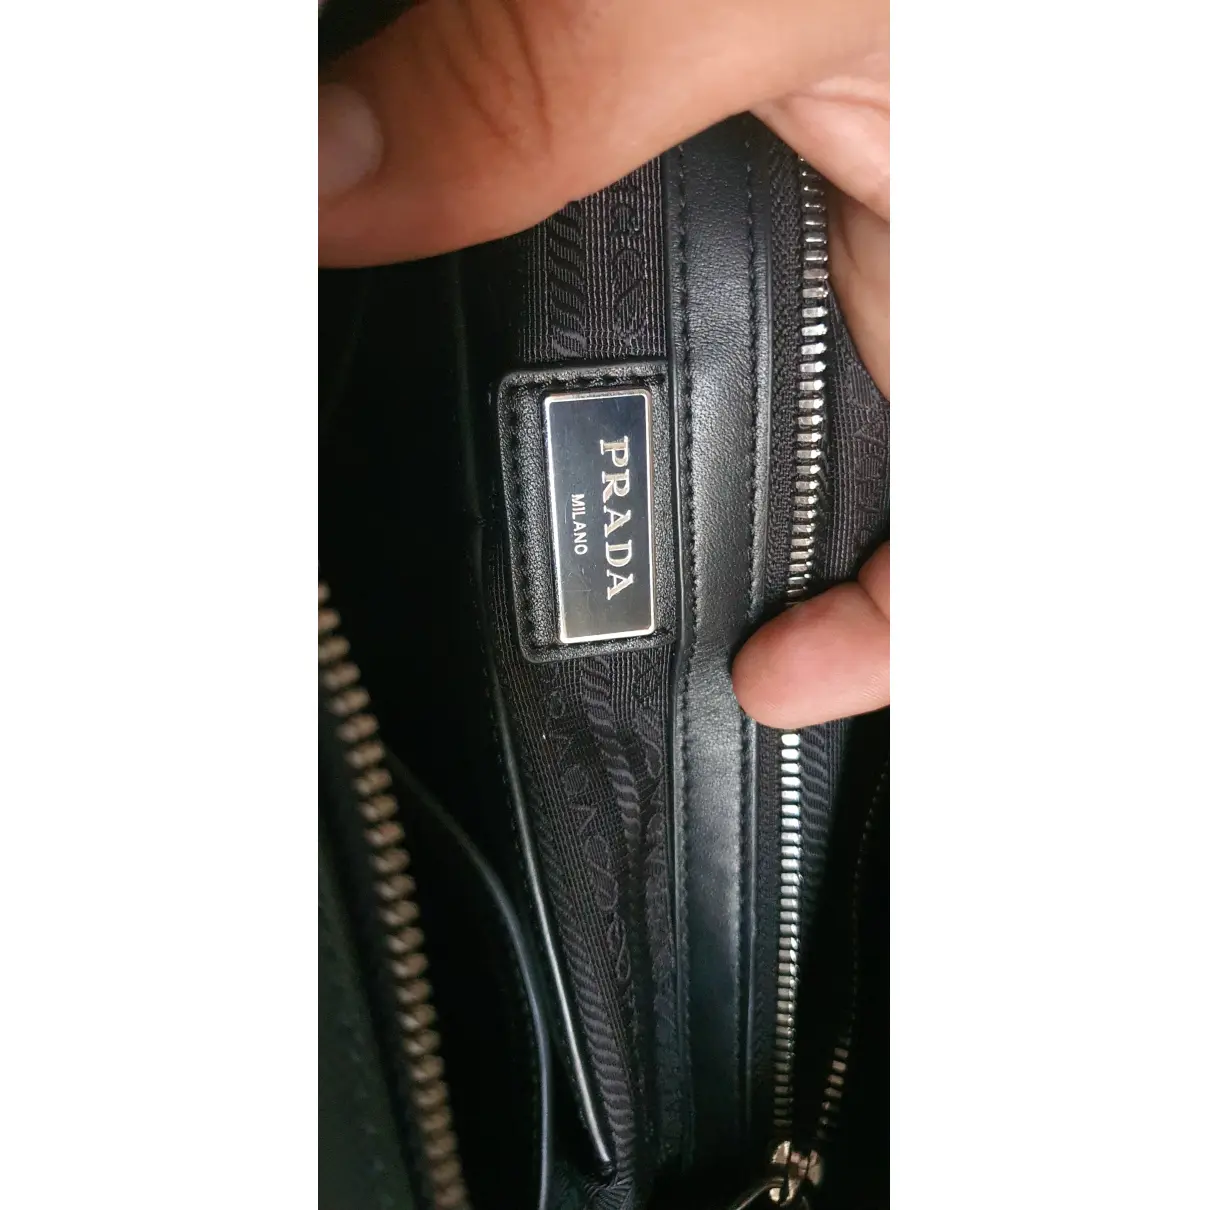 Galleria leather satchel Prada